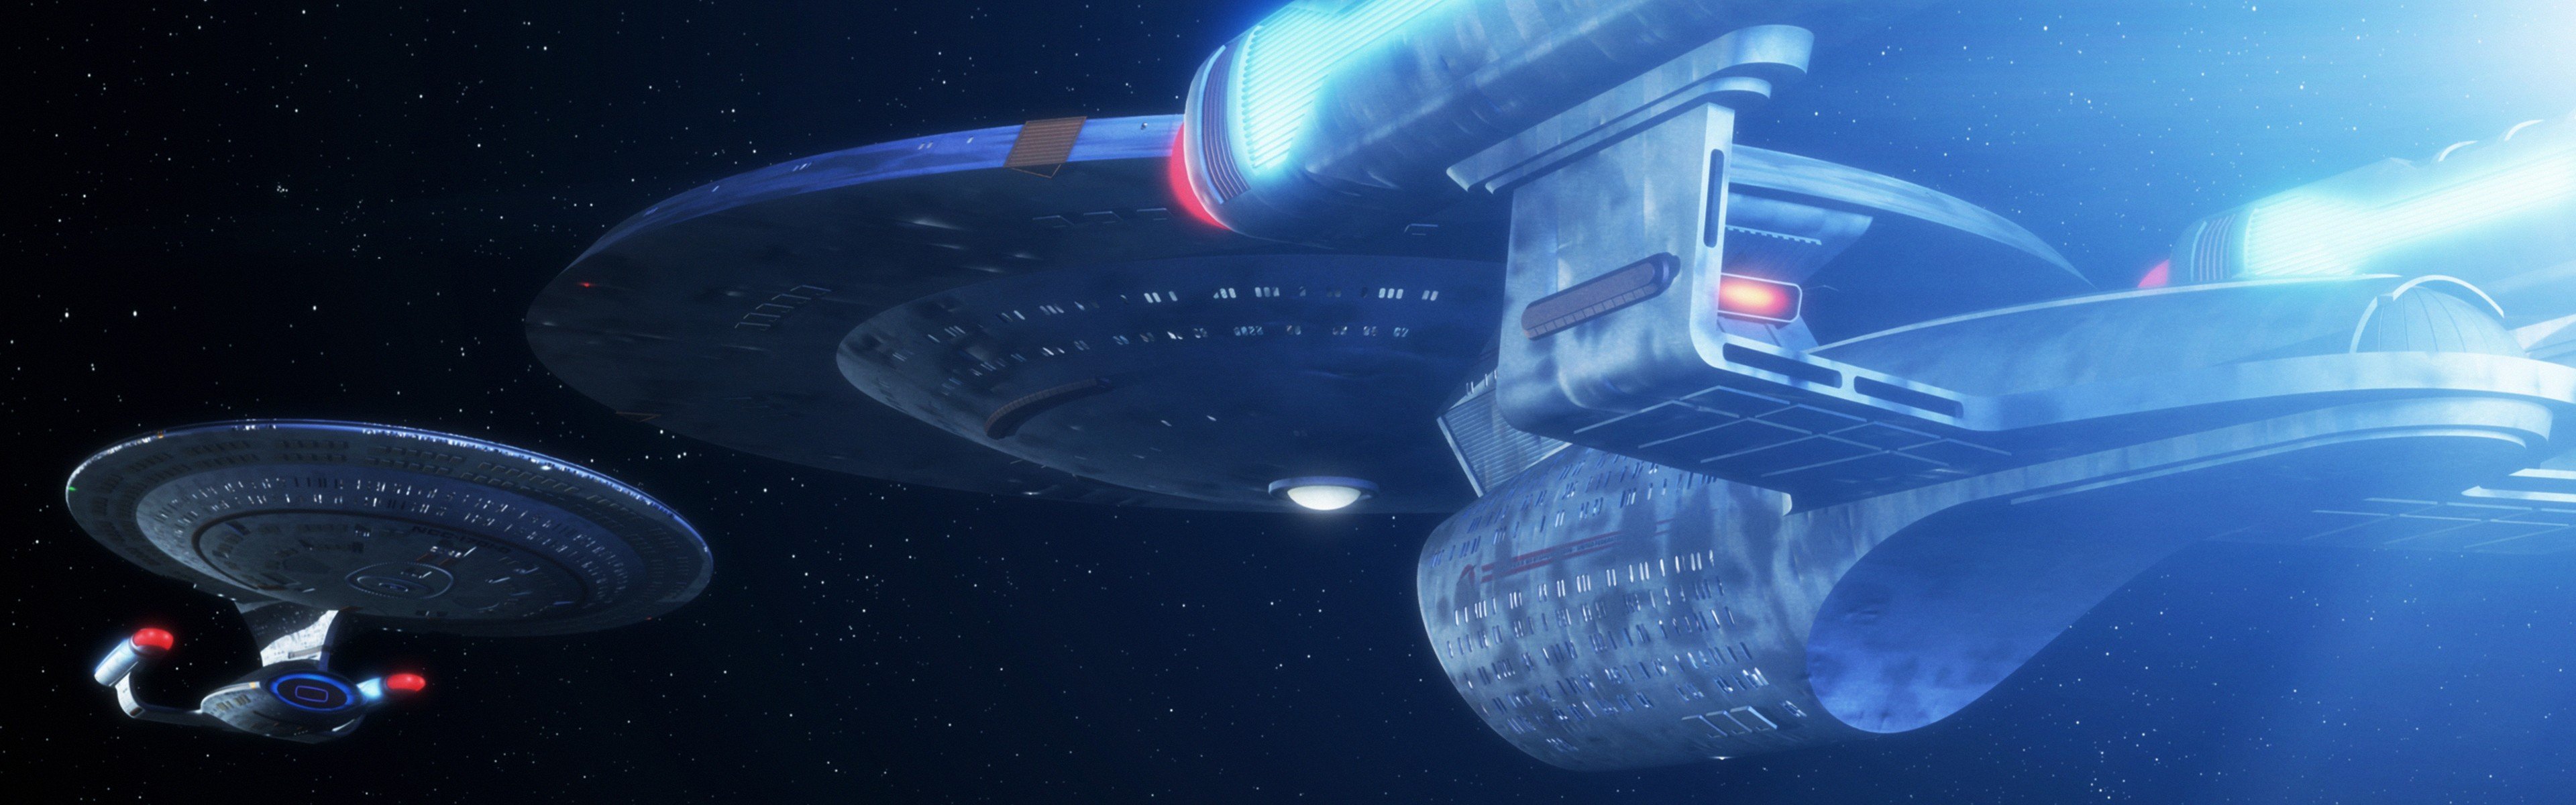 Star Trek, USS Enterprise (spaceship), Dual monitors, Multiple display, Space Wallpaper